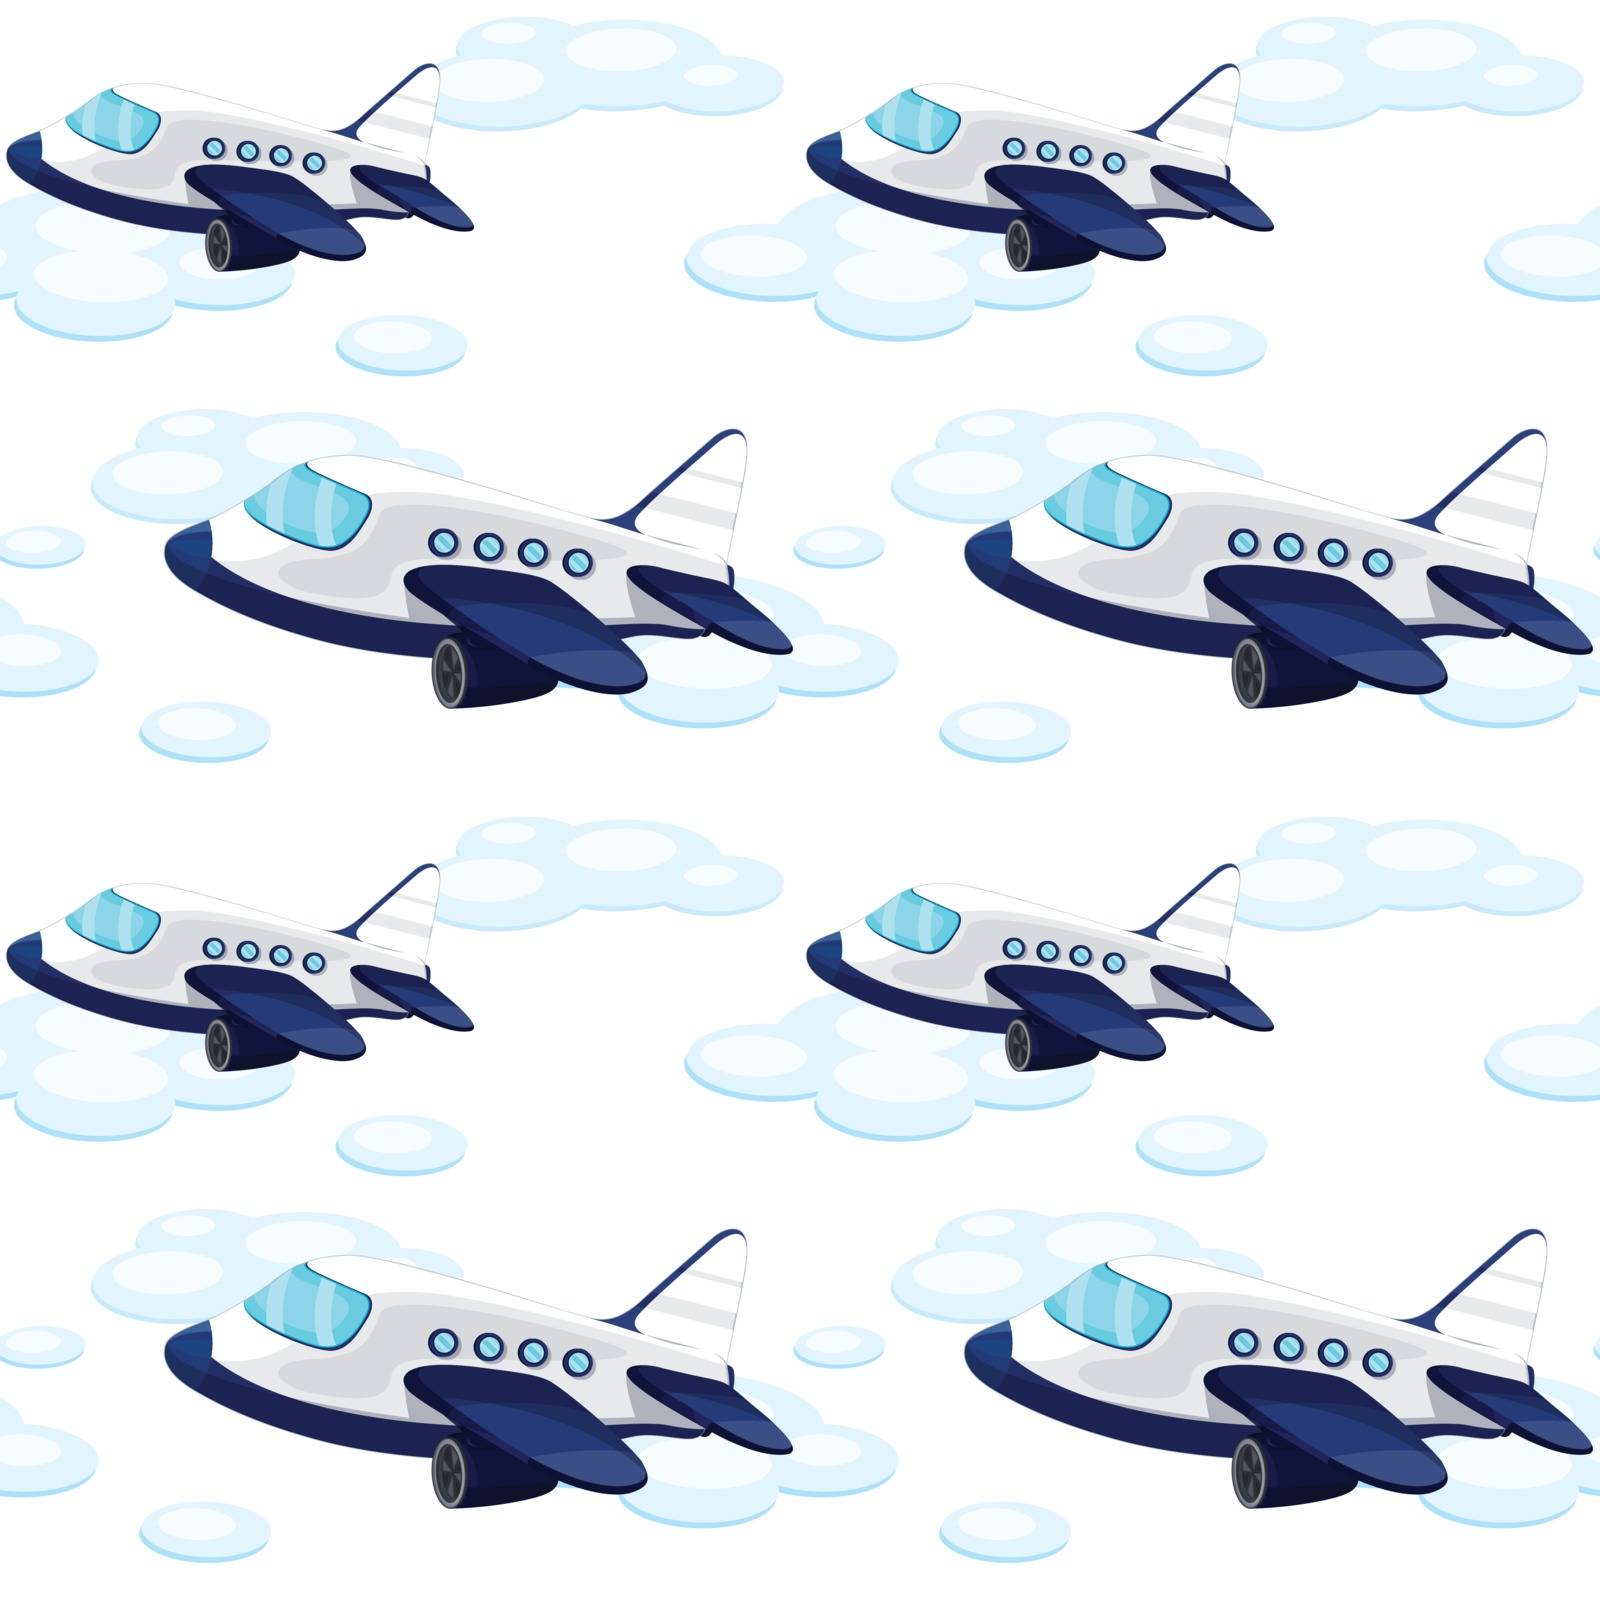 array of aeroplane by iimages